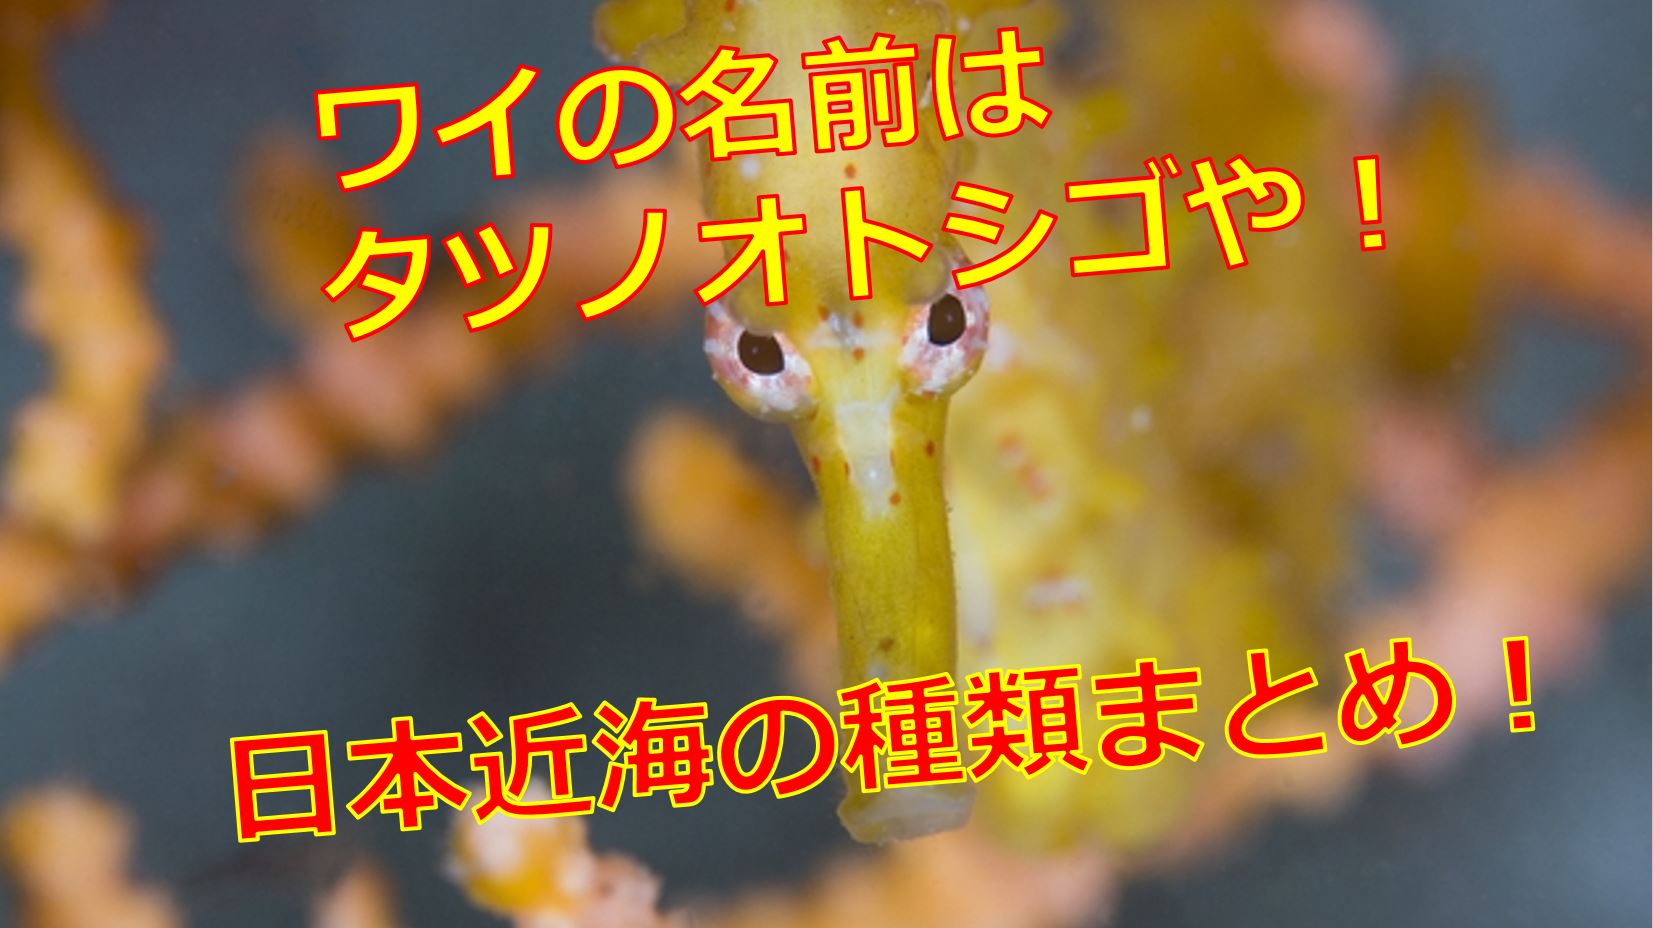 日本のタツノオトシゴの種類は 写真や画像付きで名前や生態を紹介 海鮮アクアリウム 海の生き物 魚介料理を楽しむためのブログ